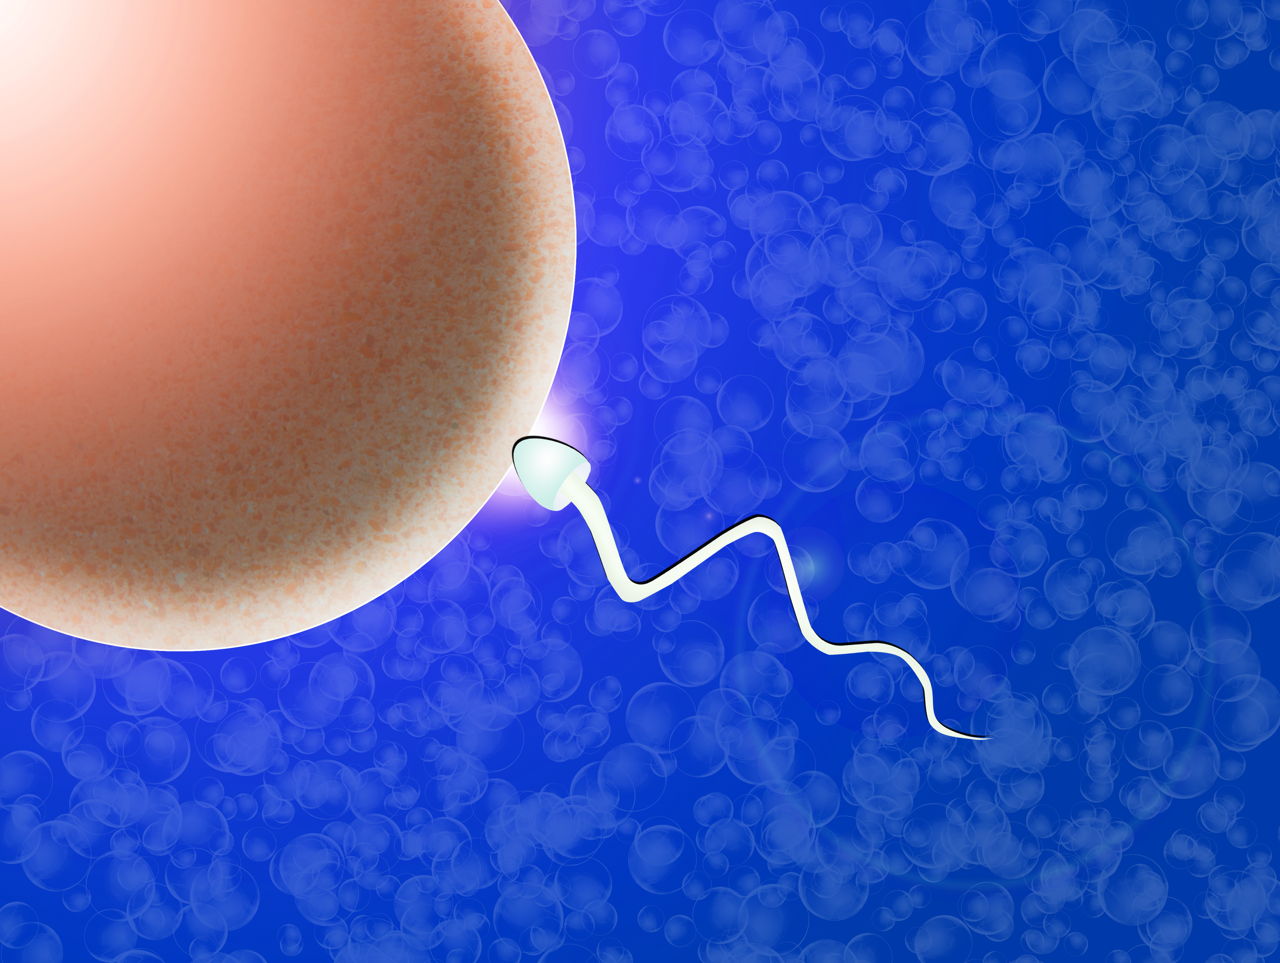 What is IVF or In Vitro Fertilization